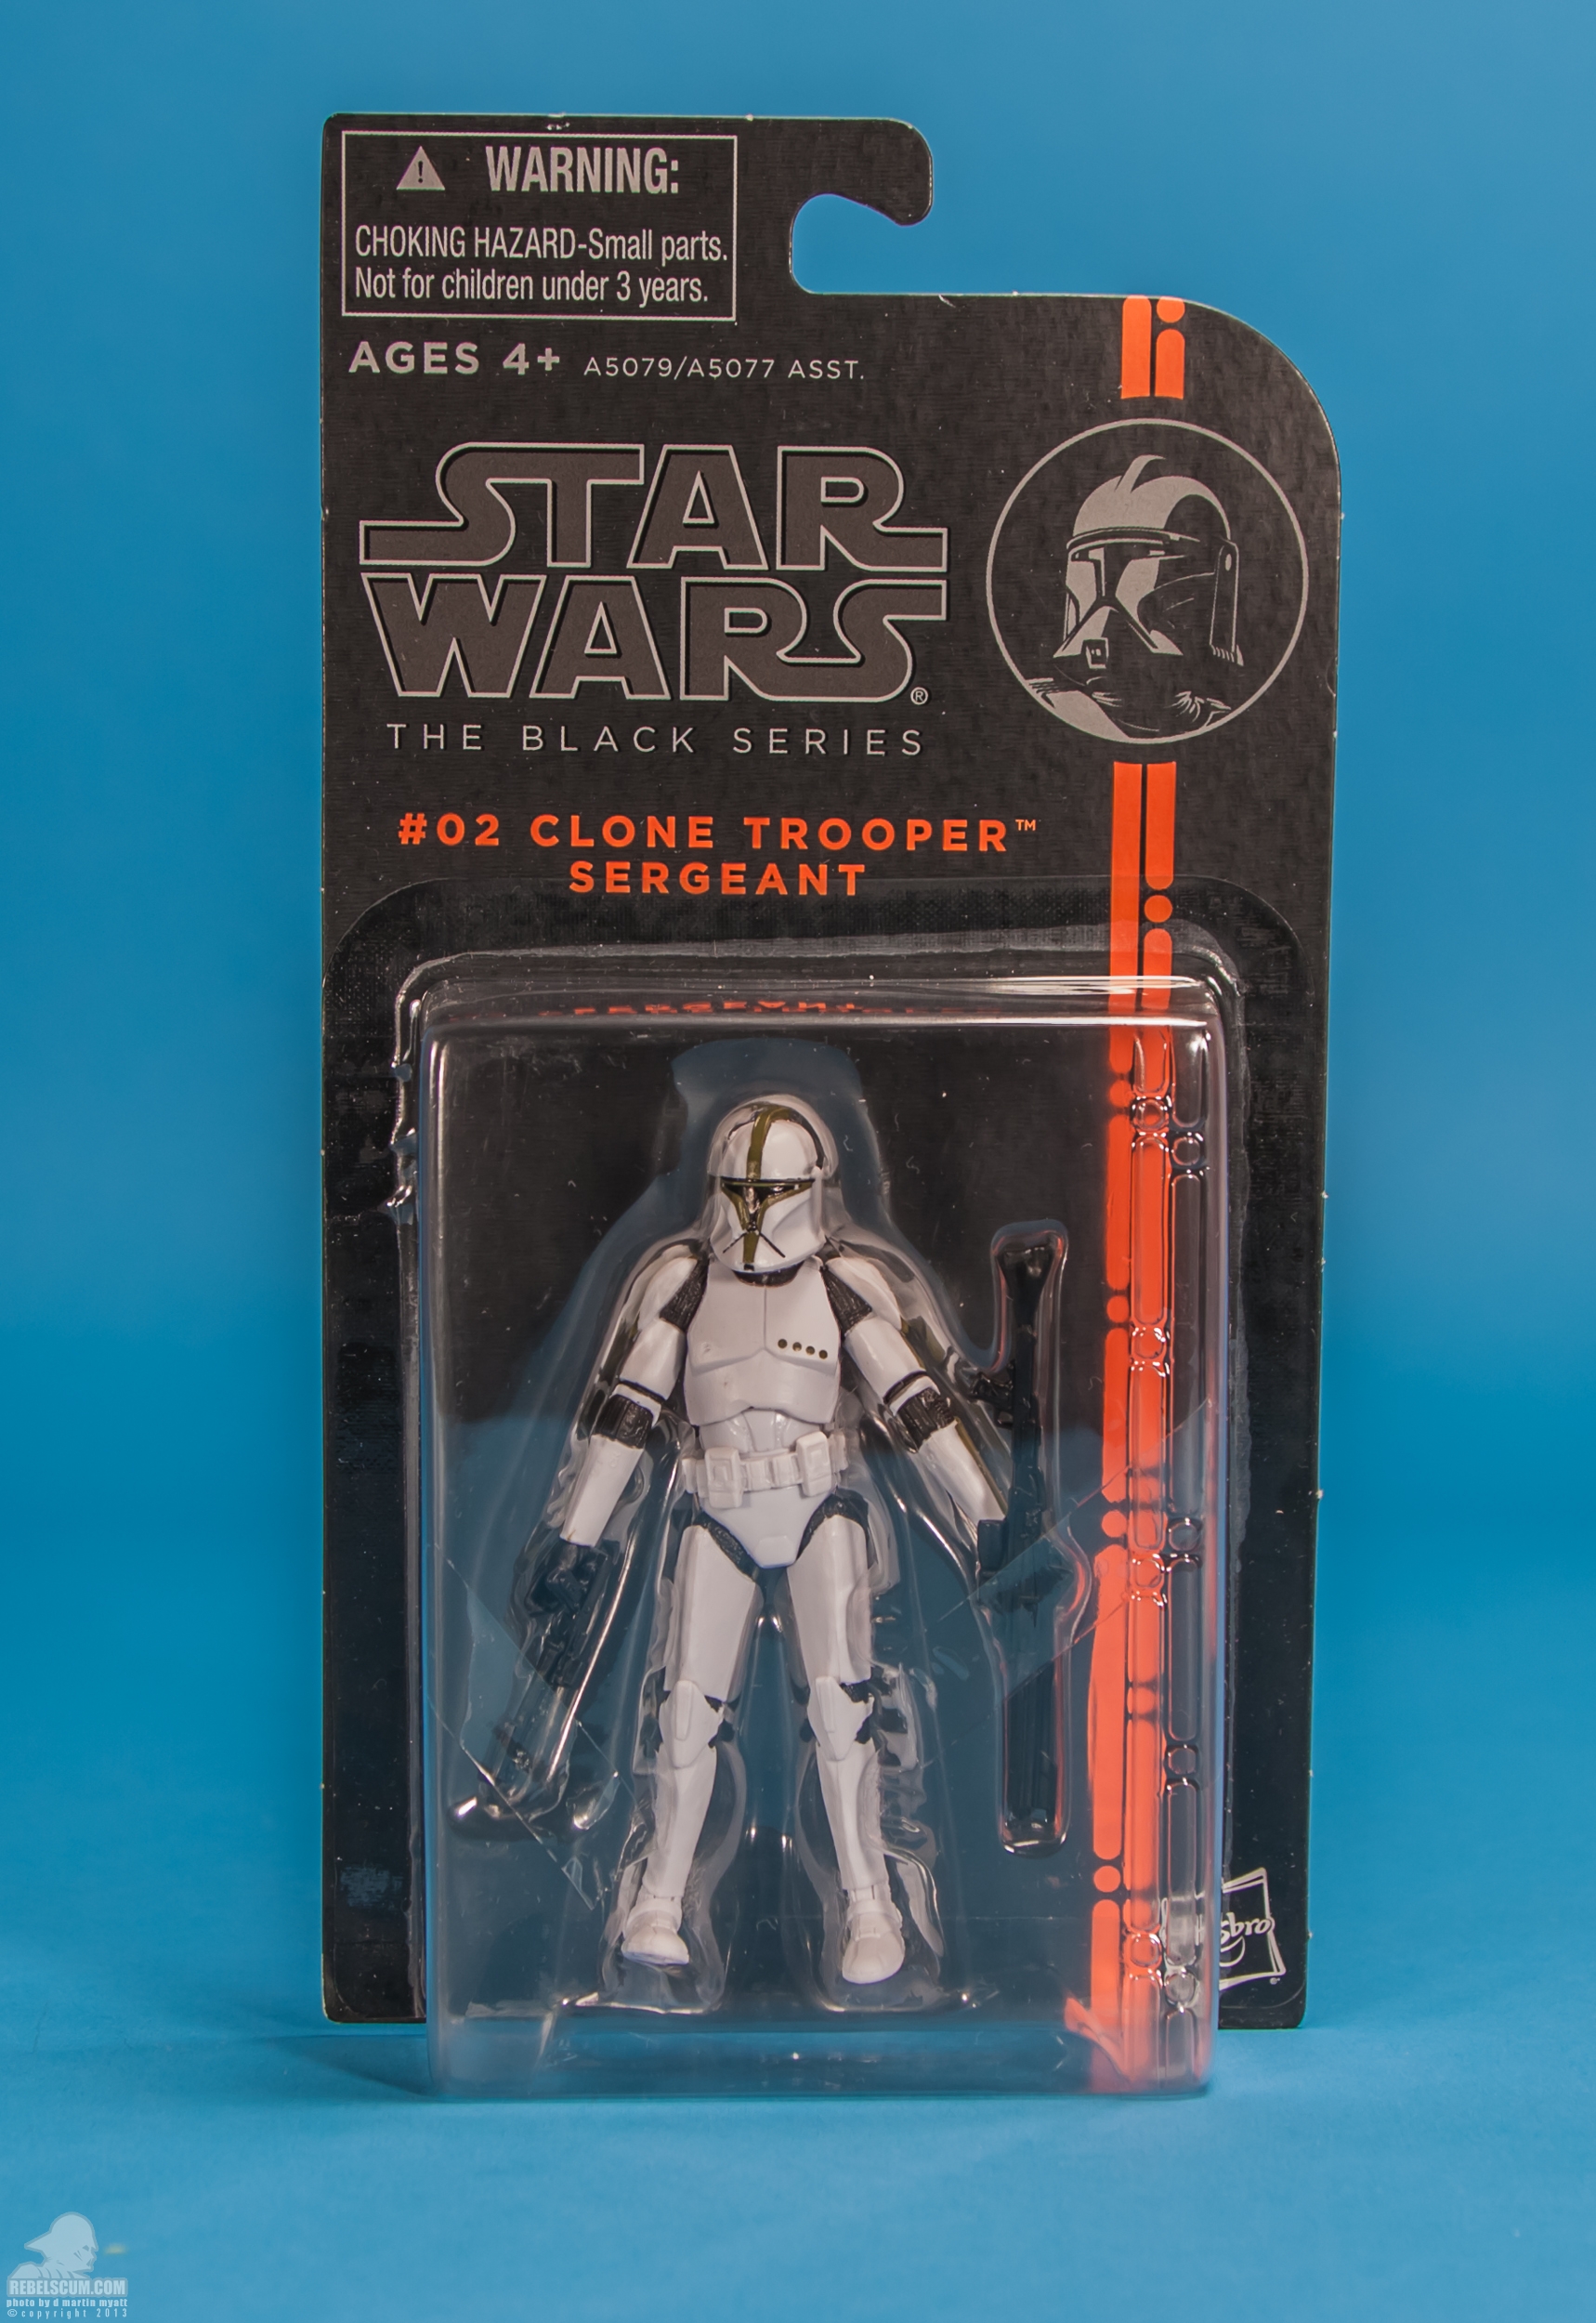 The-Black-Series-Star-Wars-Hasbro-02-Clone-Trooper-Sergeant-025.jpg